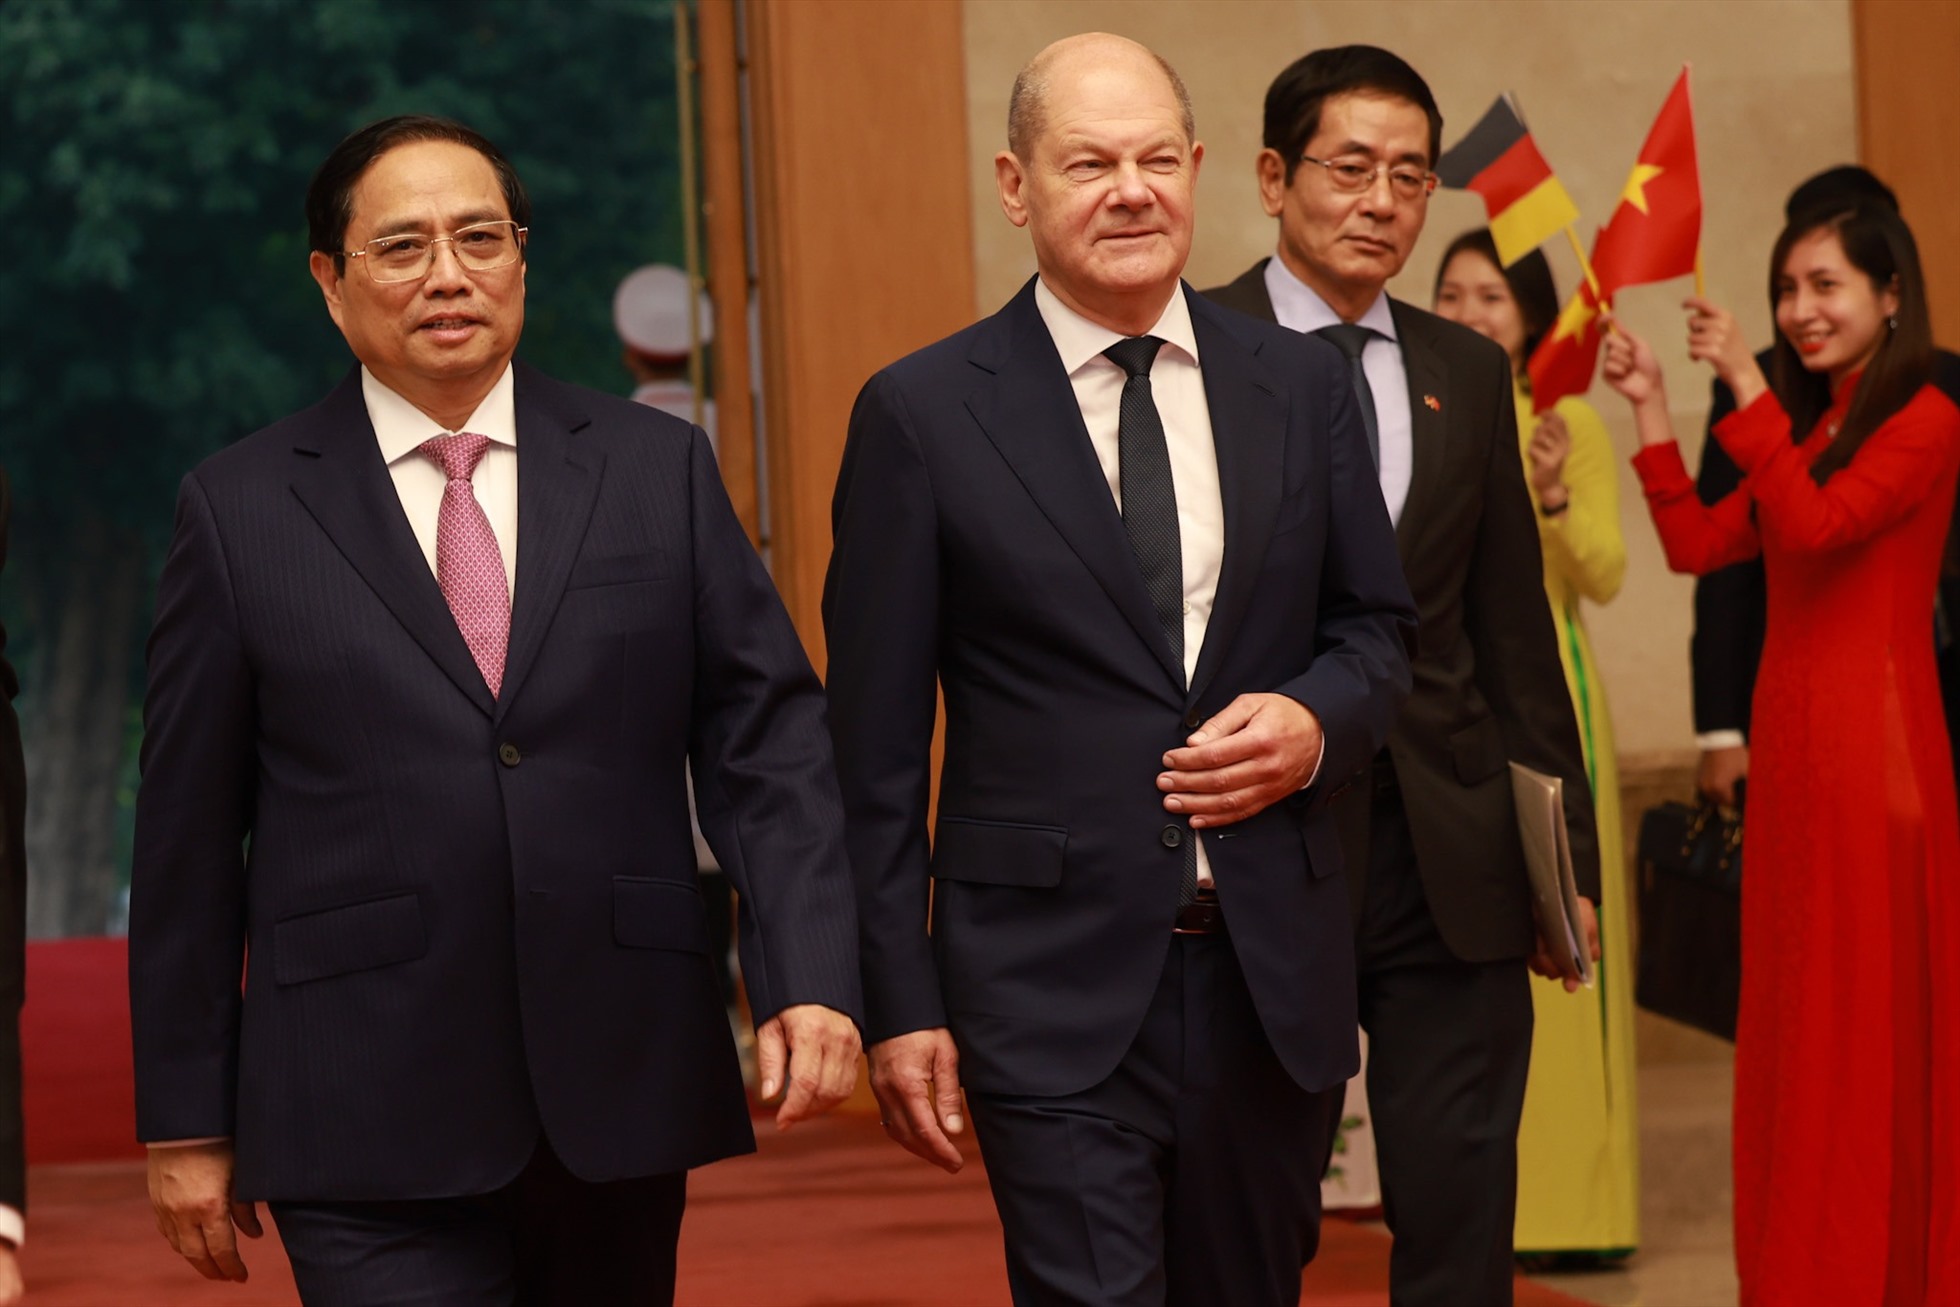 Từ năm 2020, Việt Nam được xếp là “Đối tác toàn cầu” trong Chiến lược hợp tác phát triển đến năm 2030 (BMZ 2030) của Đức. Ảnh: Hải Nguyễn